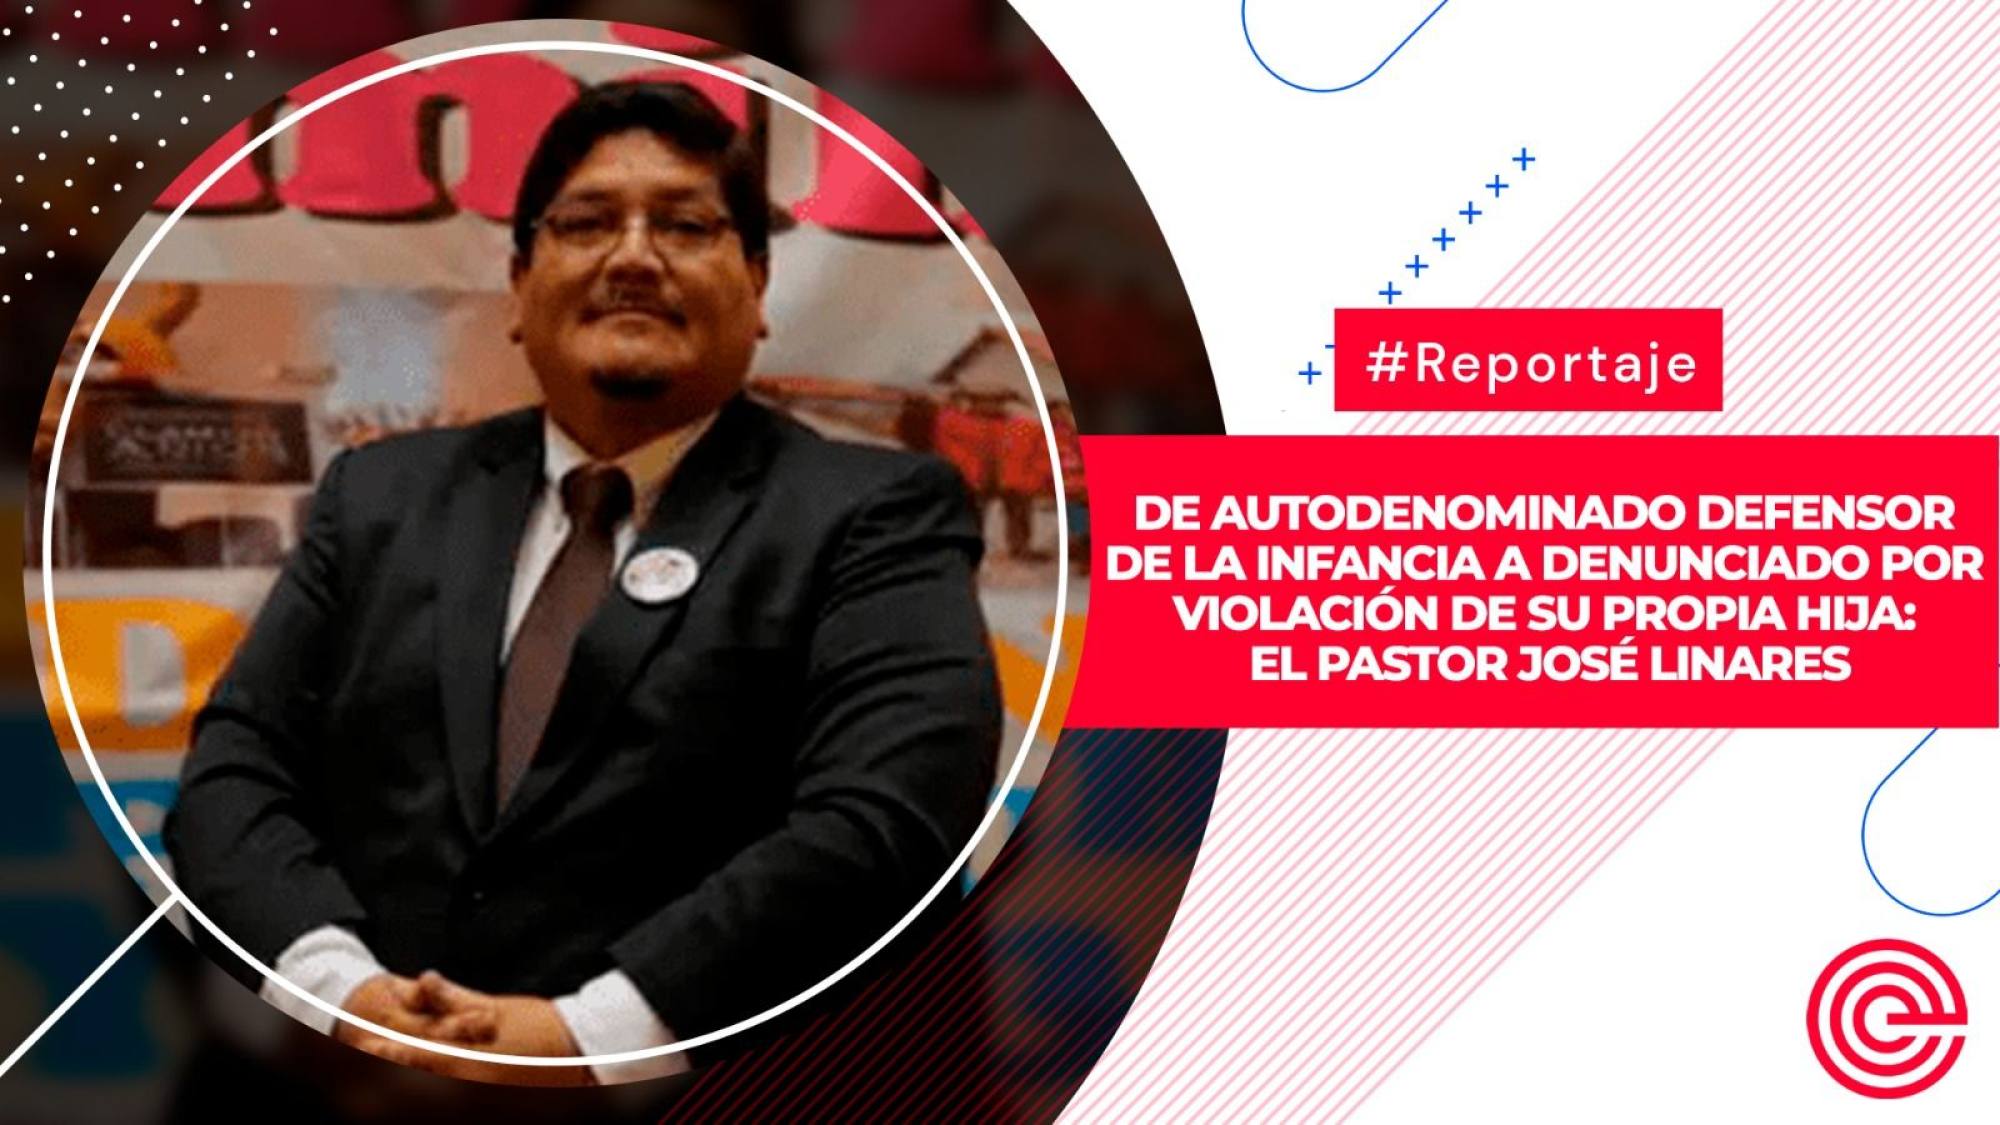 De autodenominado defensor de la infancia a denunciado por violación de su propia hija: el pastor José Linares, Epicentro TV